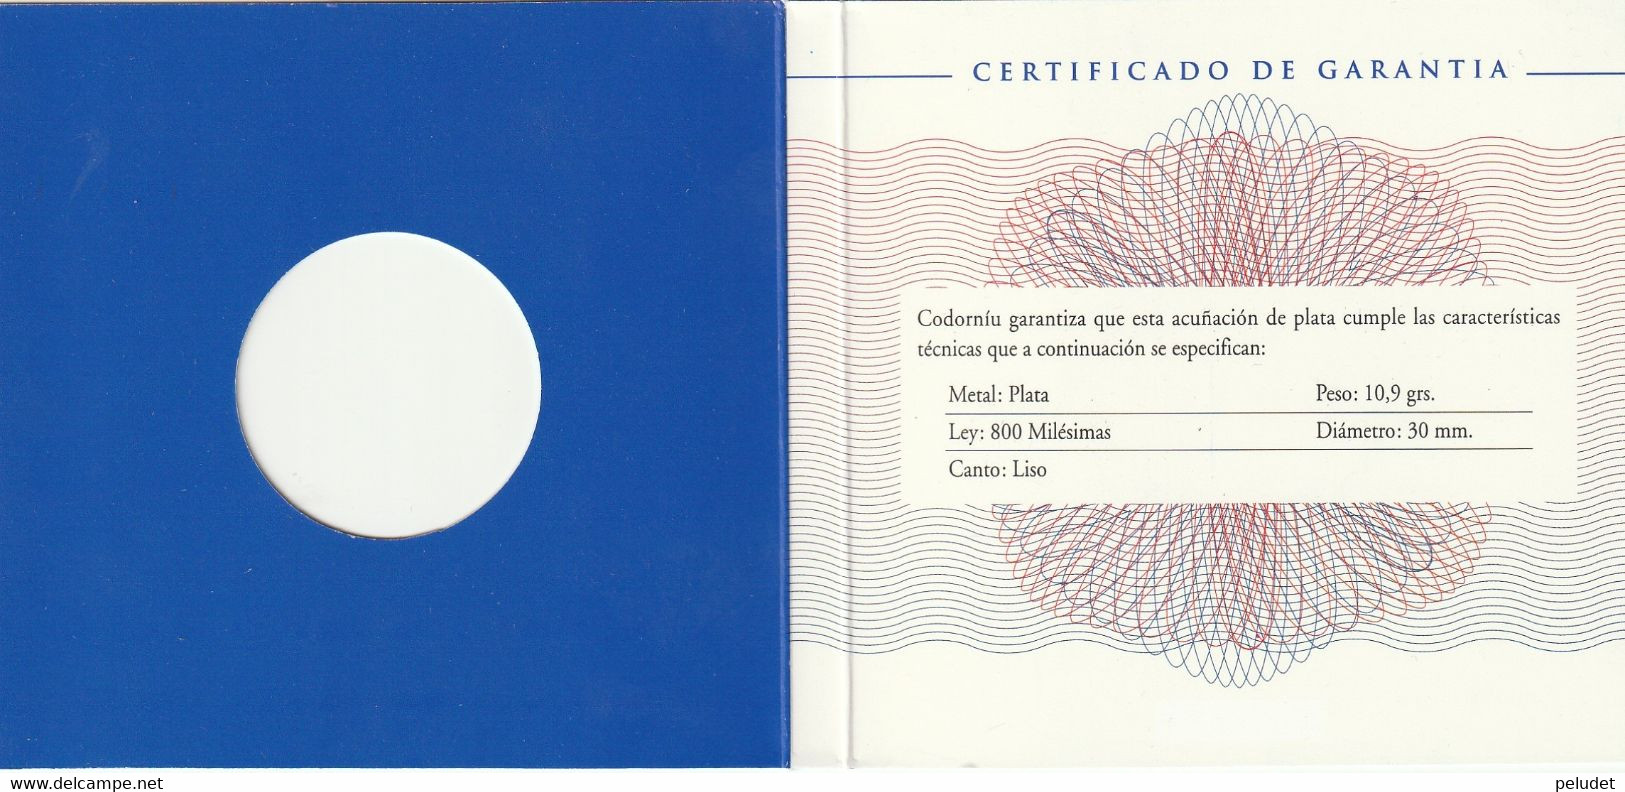 Europa, Medalla Medaille Medal, Enero 1999, Codorniu, 1, Con Certificado De Garantia, With Warranty Certificate - Profesionales/De Sociedad